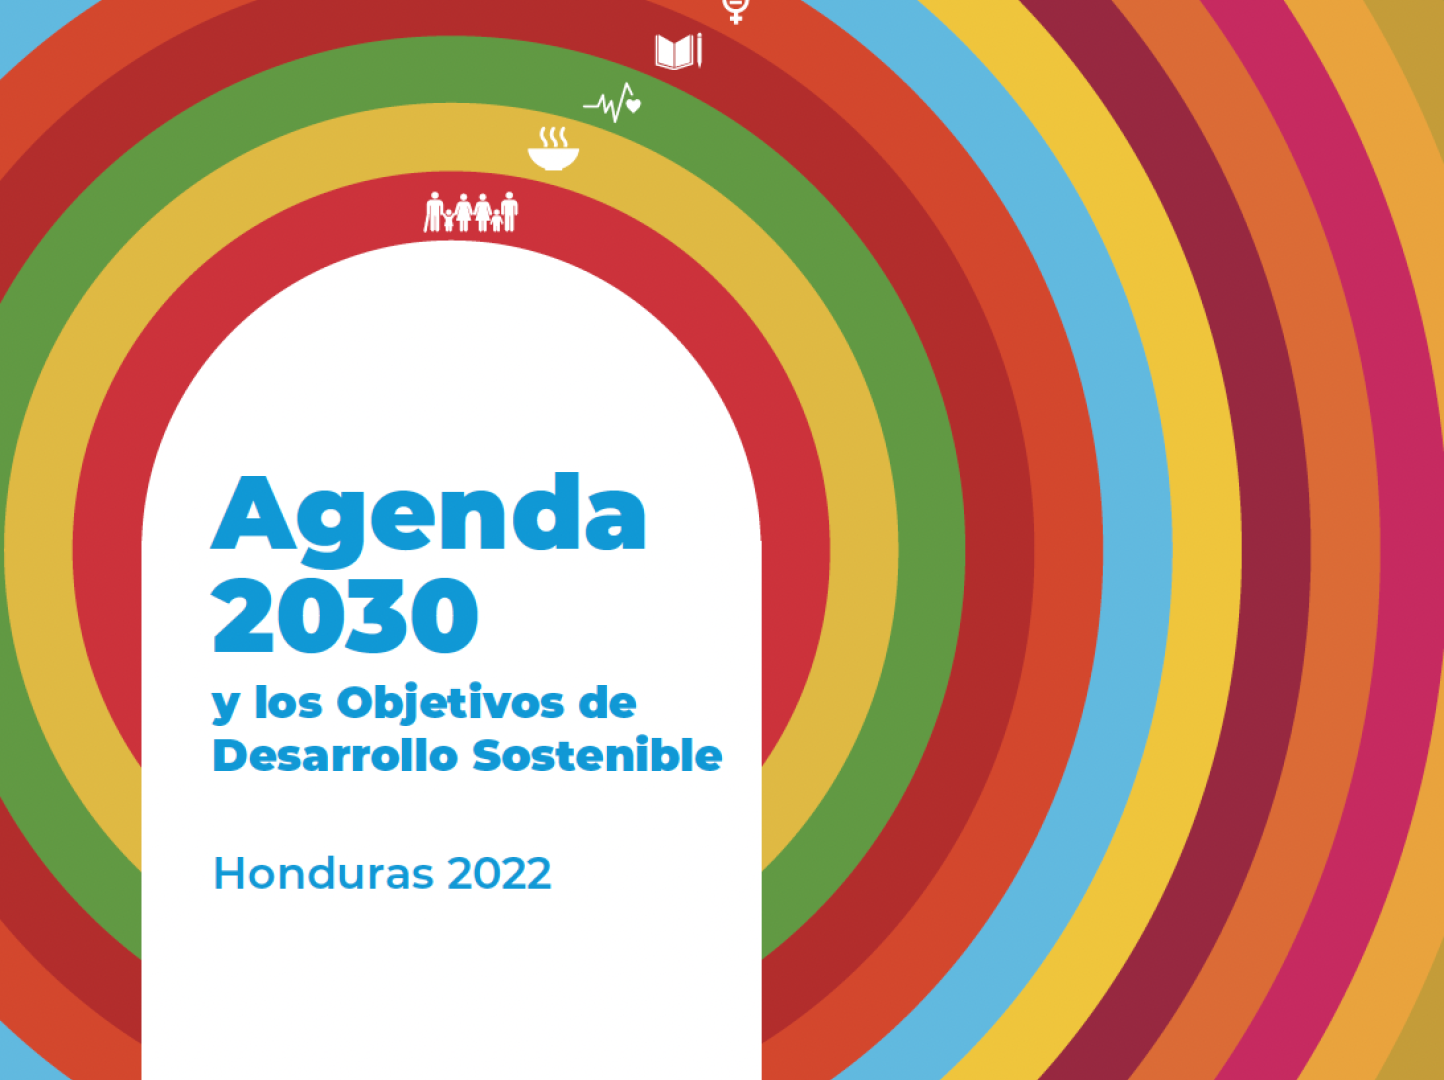 Portada de publicación con el título "Agenda 2030 y los Objetivos de Desarrollo Sostenible" - Honduras 2022